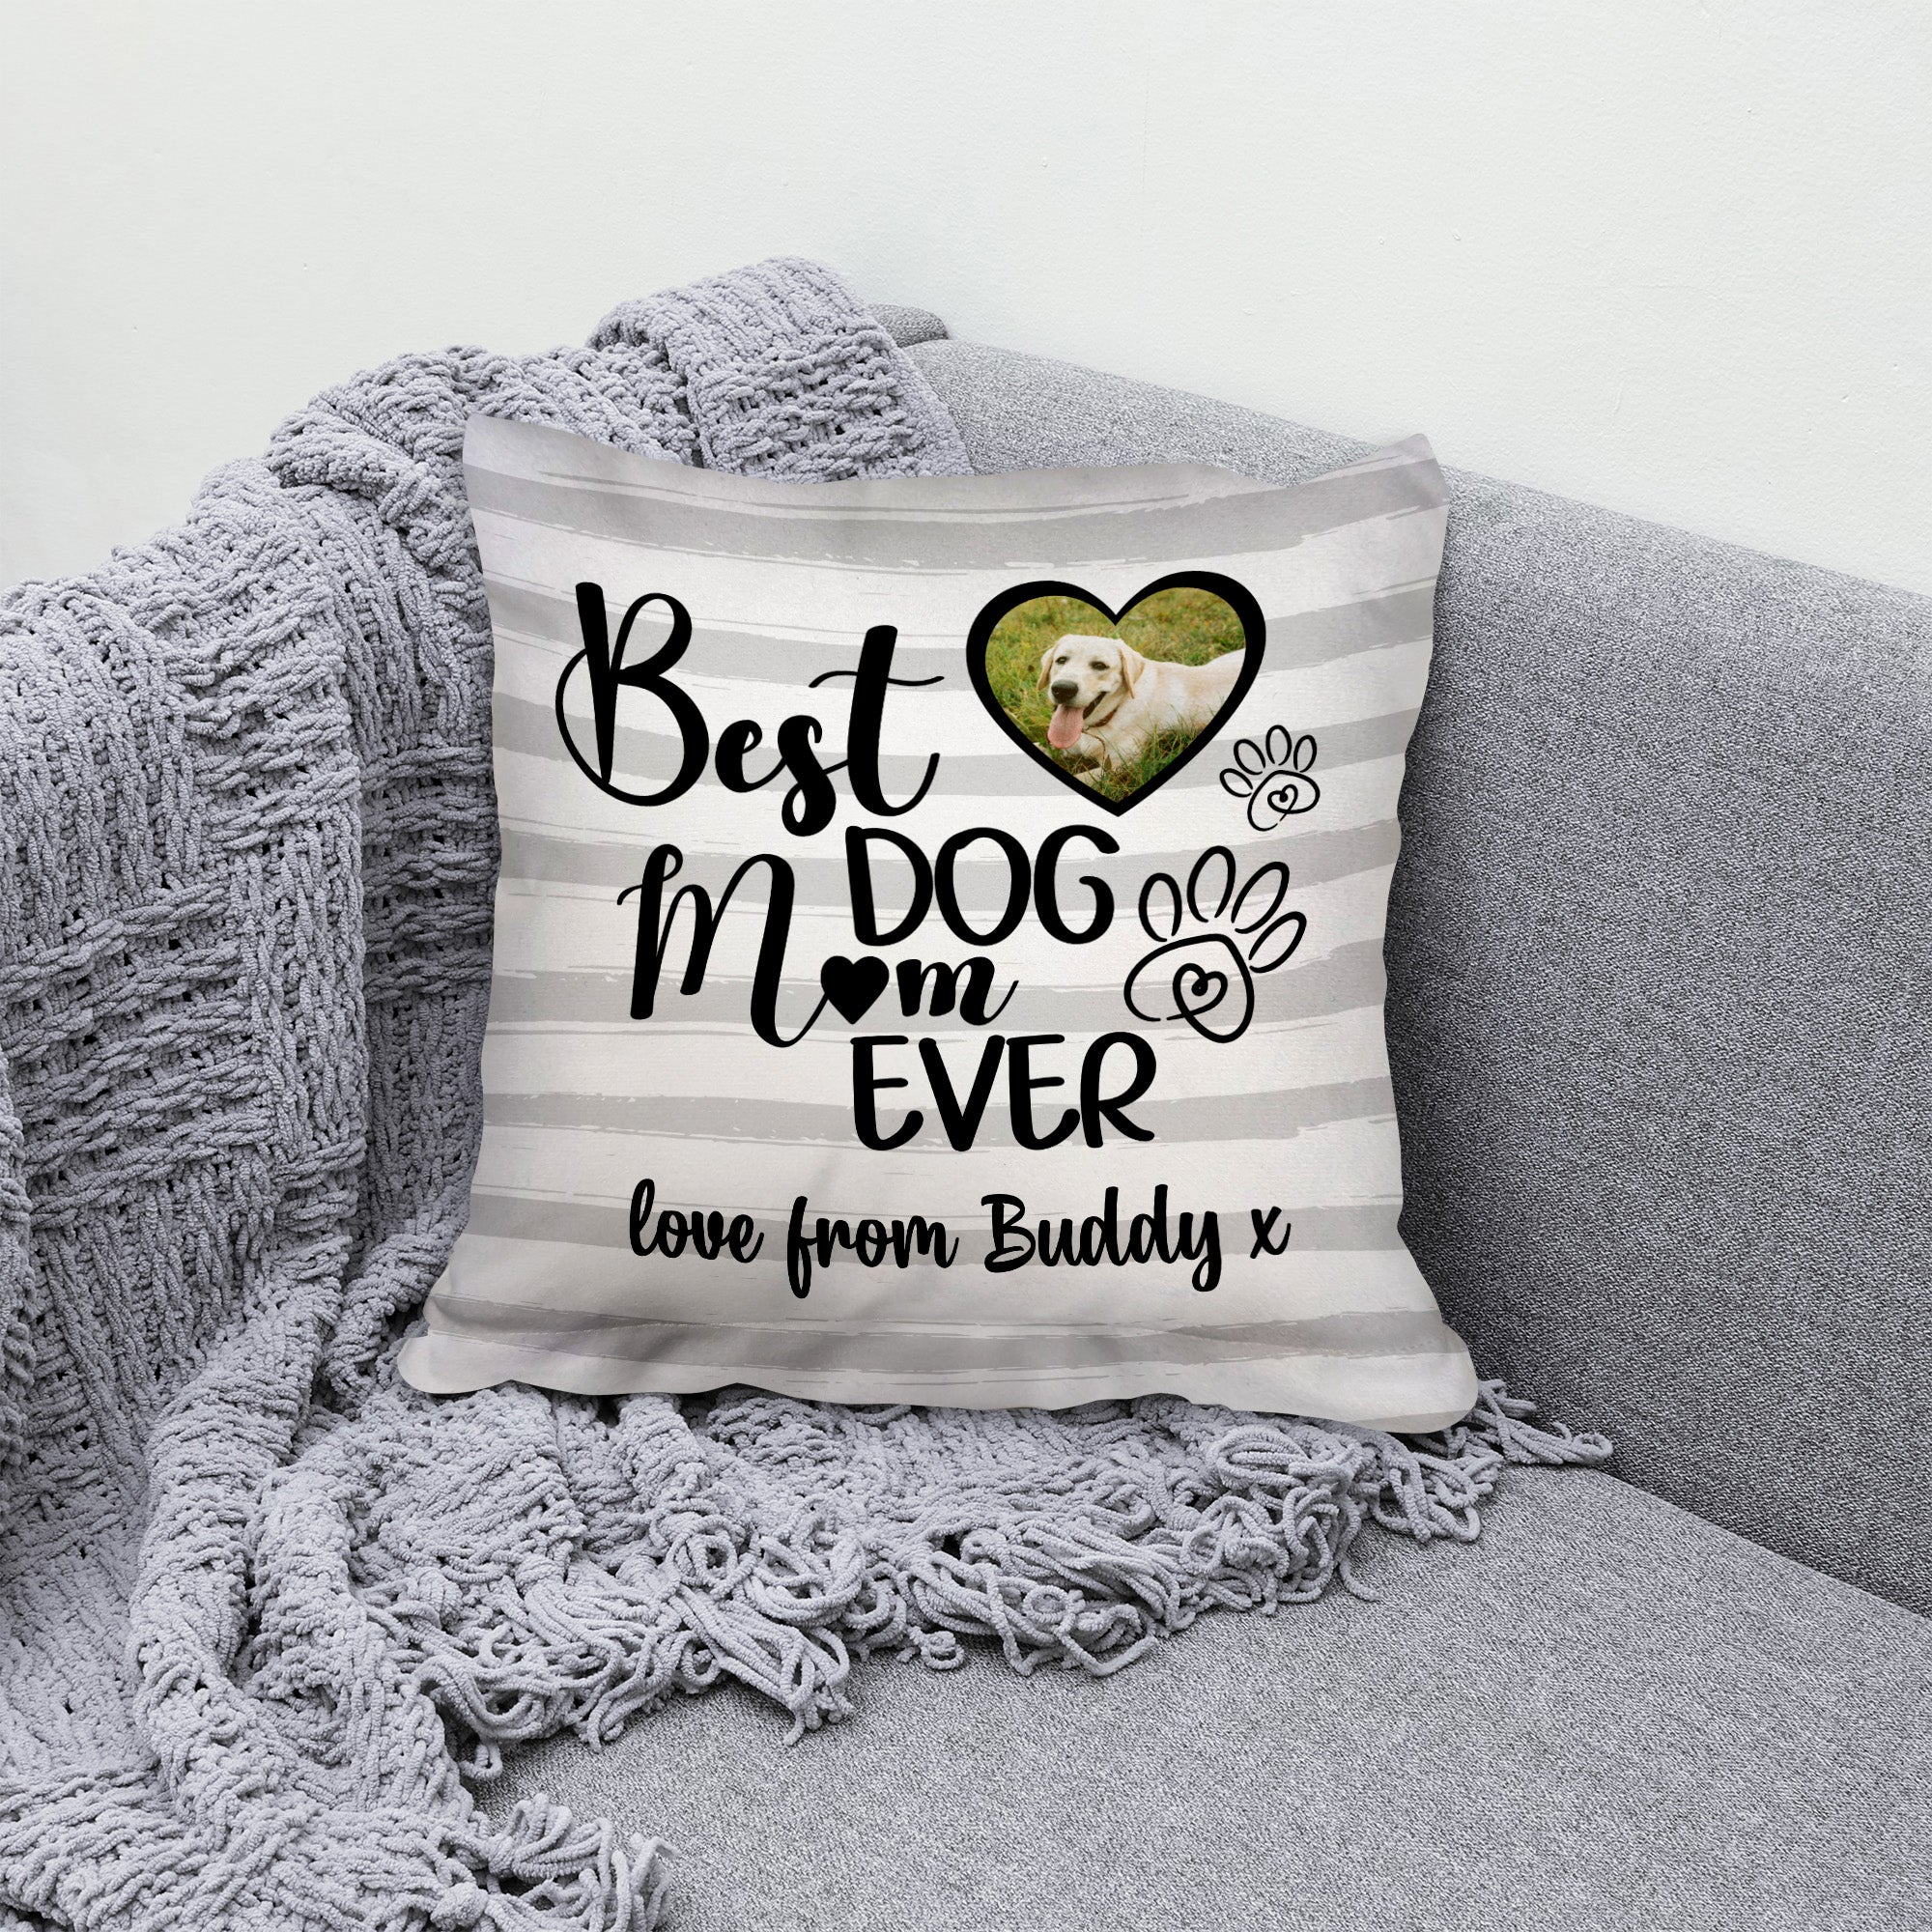 Best Dog Mum - Grey Stripe - 26cm x 26cm - Personalised Cushion